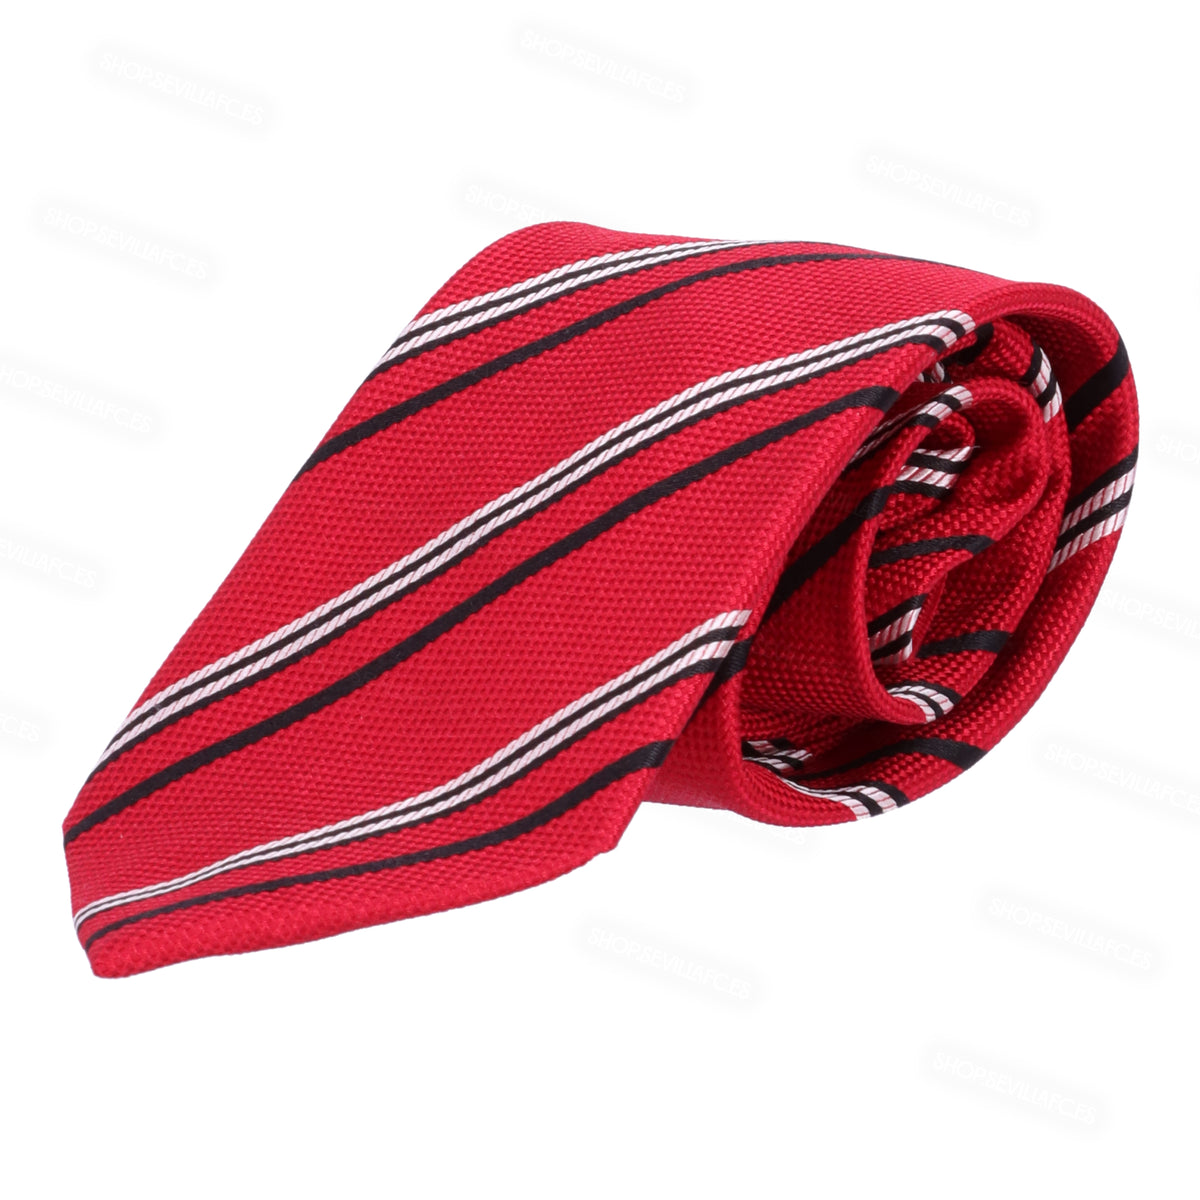 Corbata roja con rayas diagonales